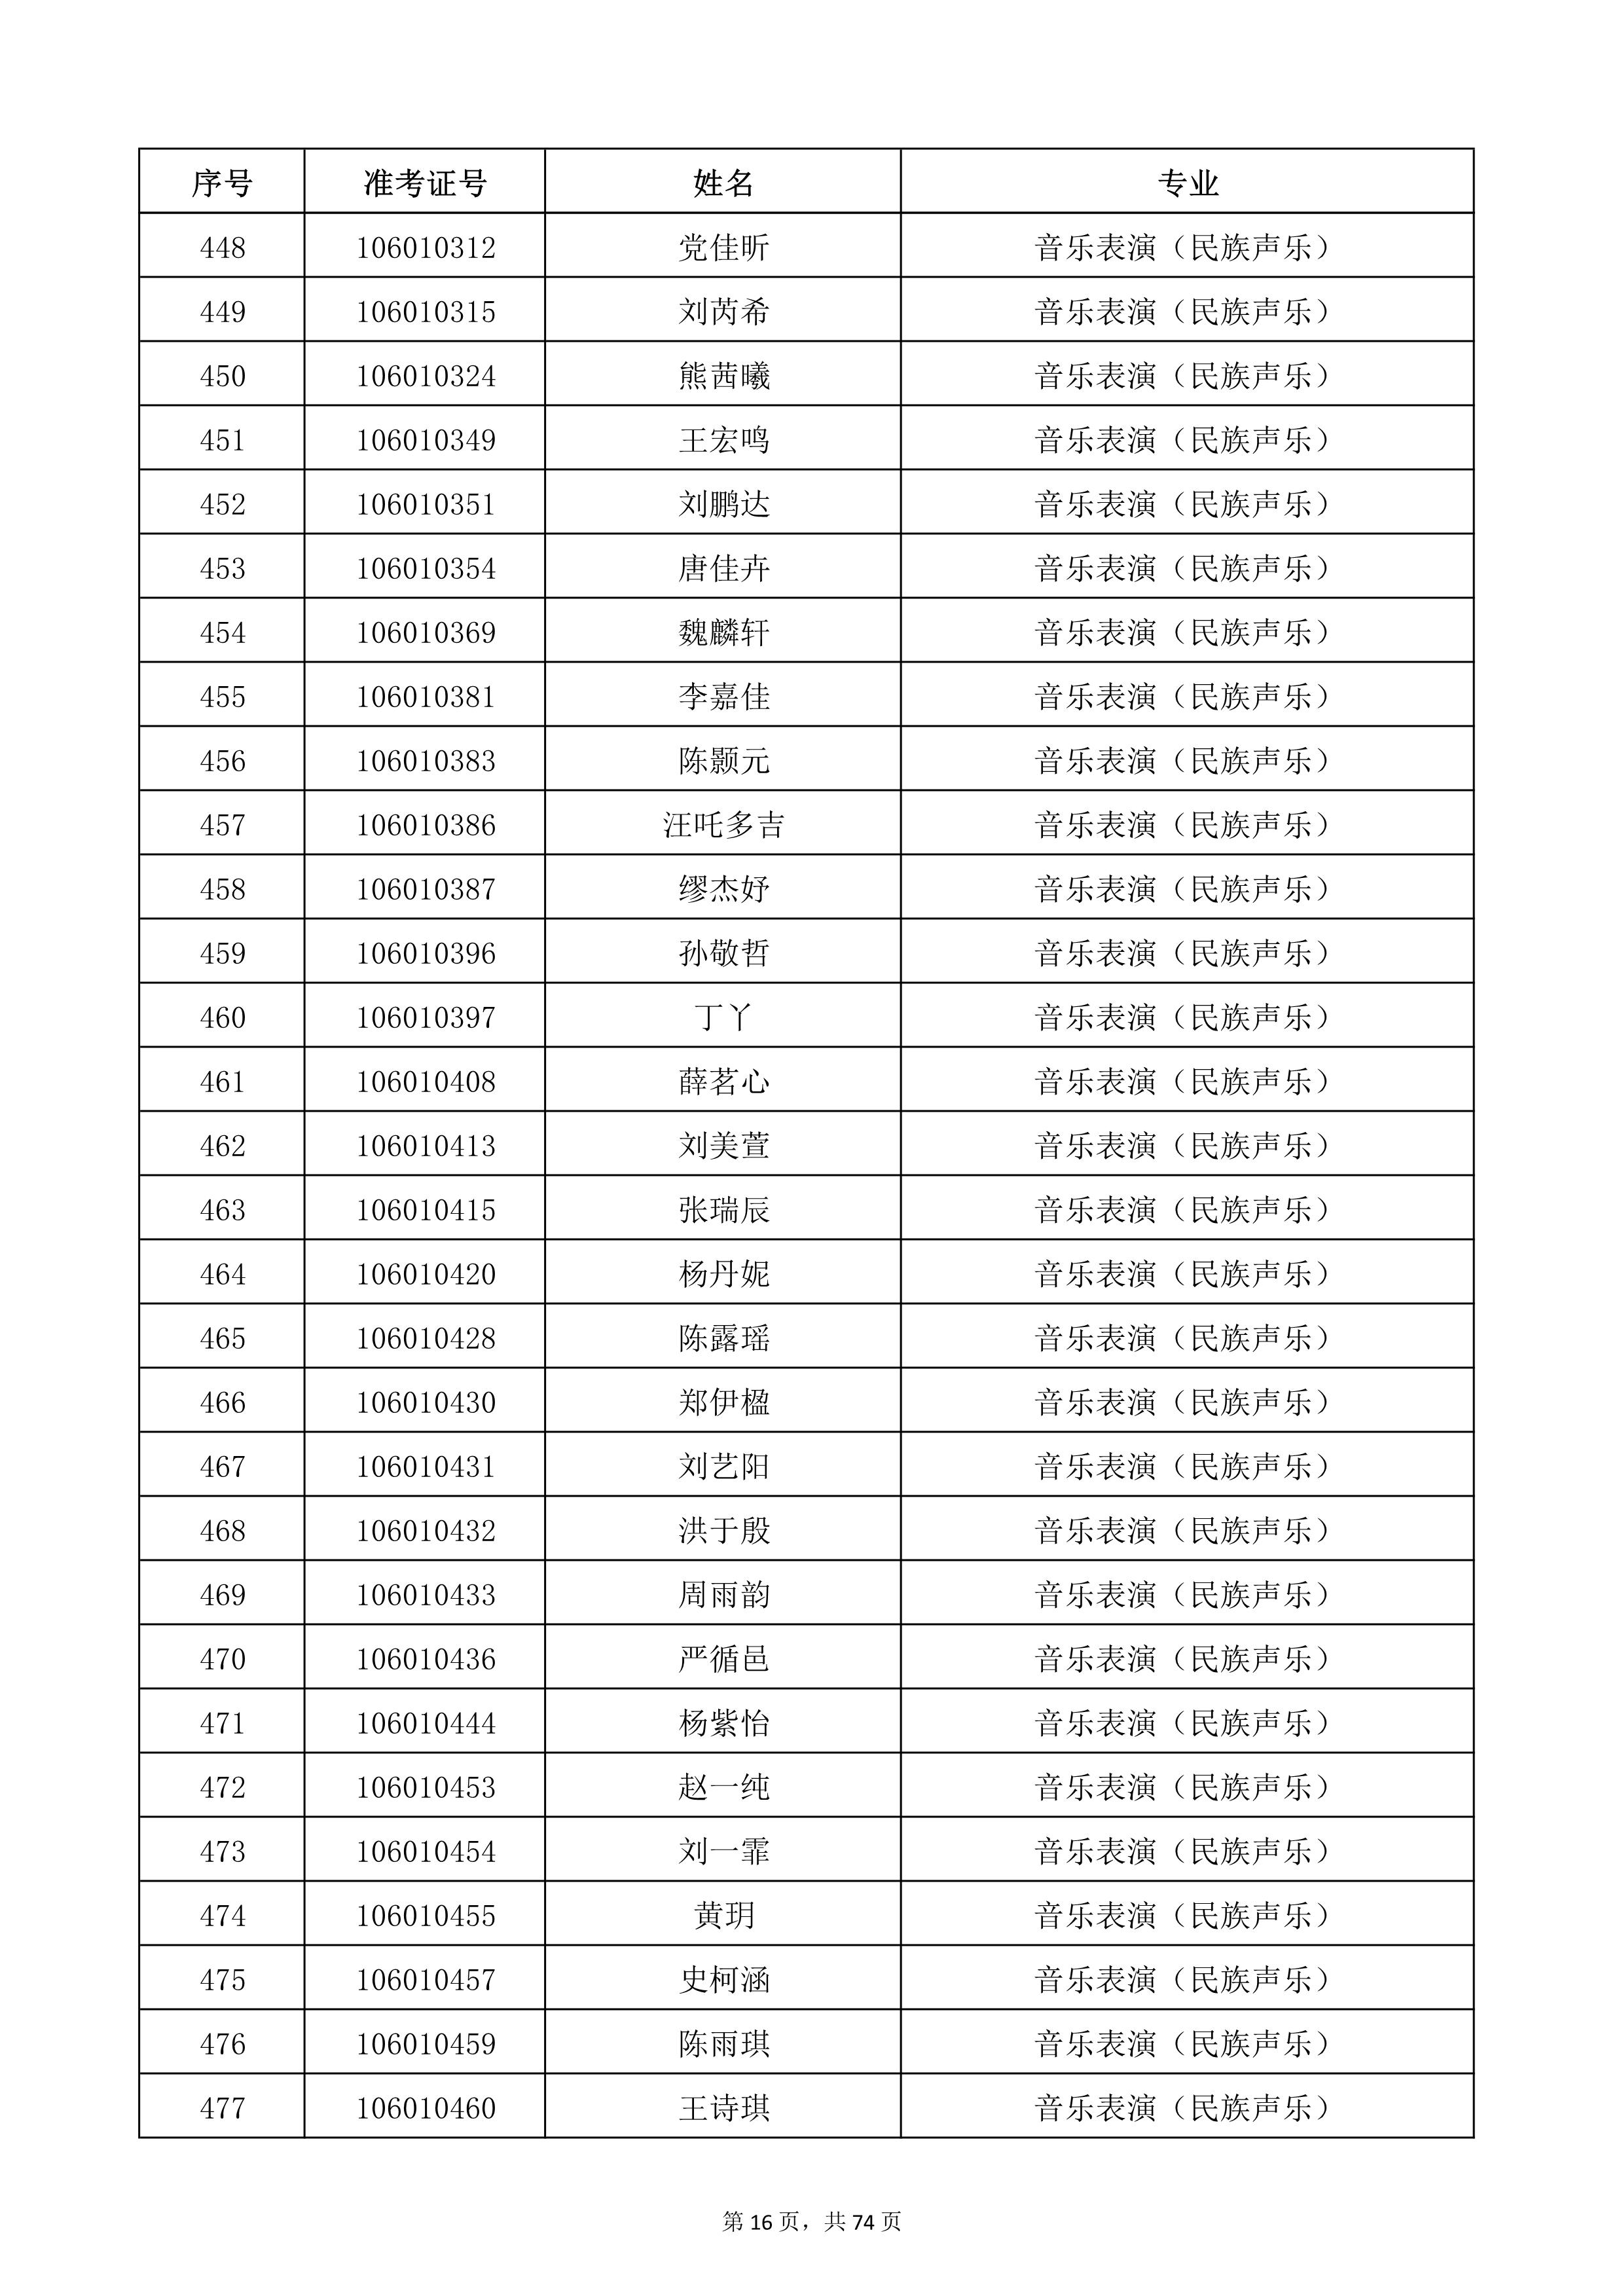 天津音乐学院2022年本科招生考试复试名单_16.jpg